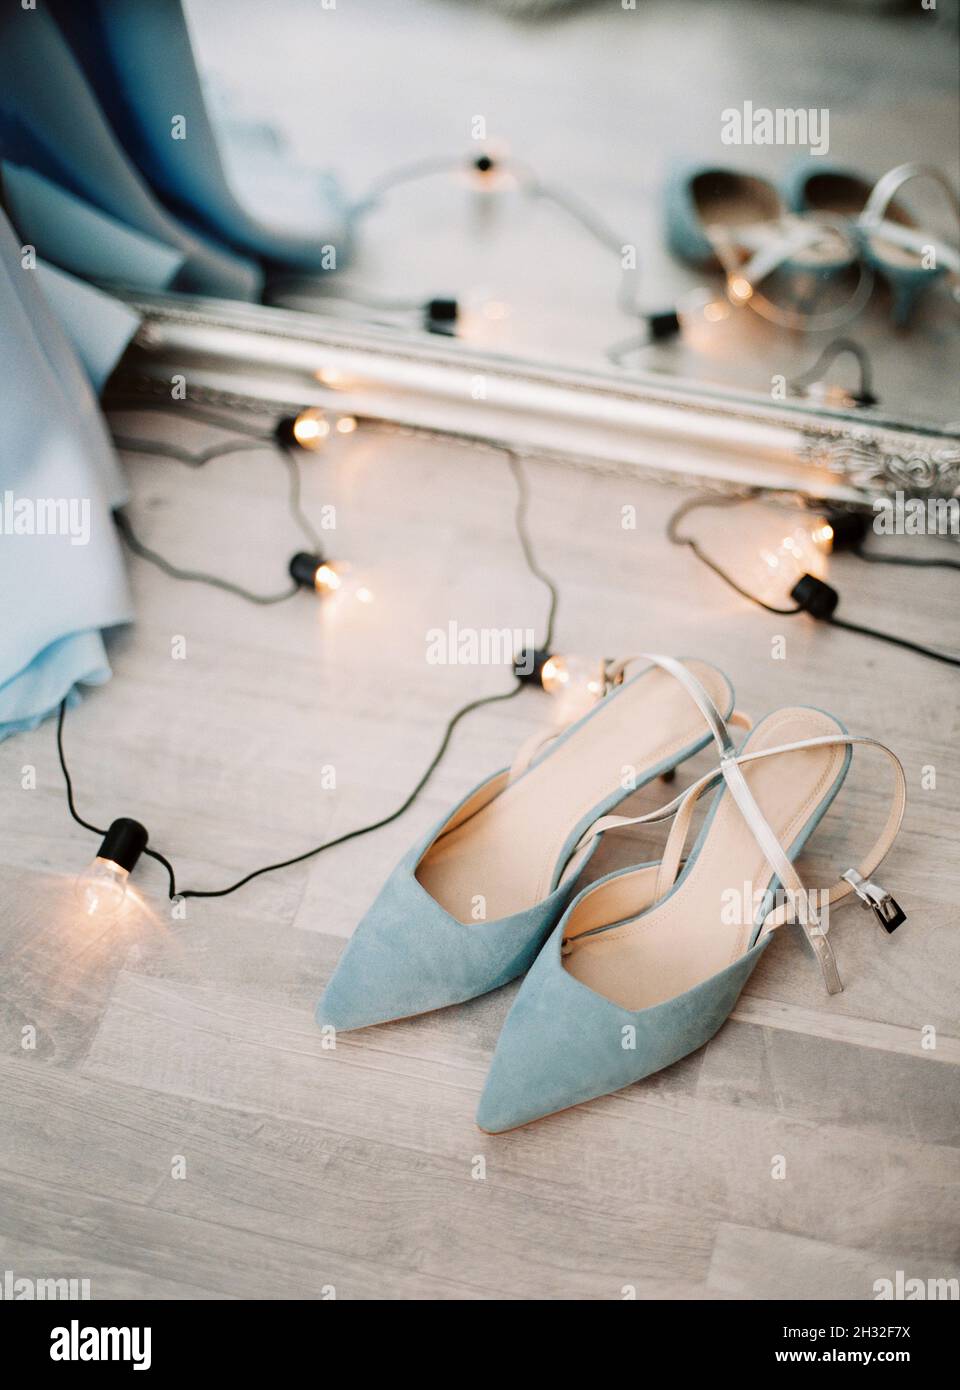 Blaue Wildleder hohe Absatz Sommer weibliche Schuhe und Lampen Girlande auf  einem Boden, mit Spiegel Hintergrund, moderne Mode. Draufsicht, flach  liegend, Nahaufnahme Stockfotografie - Alamy